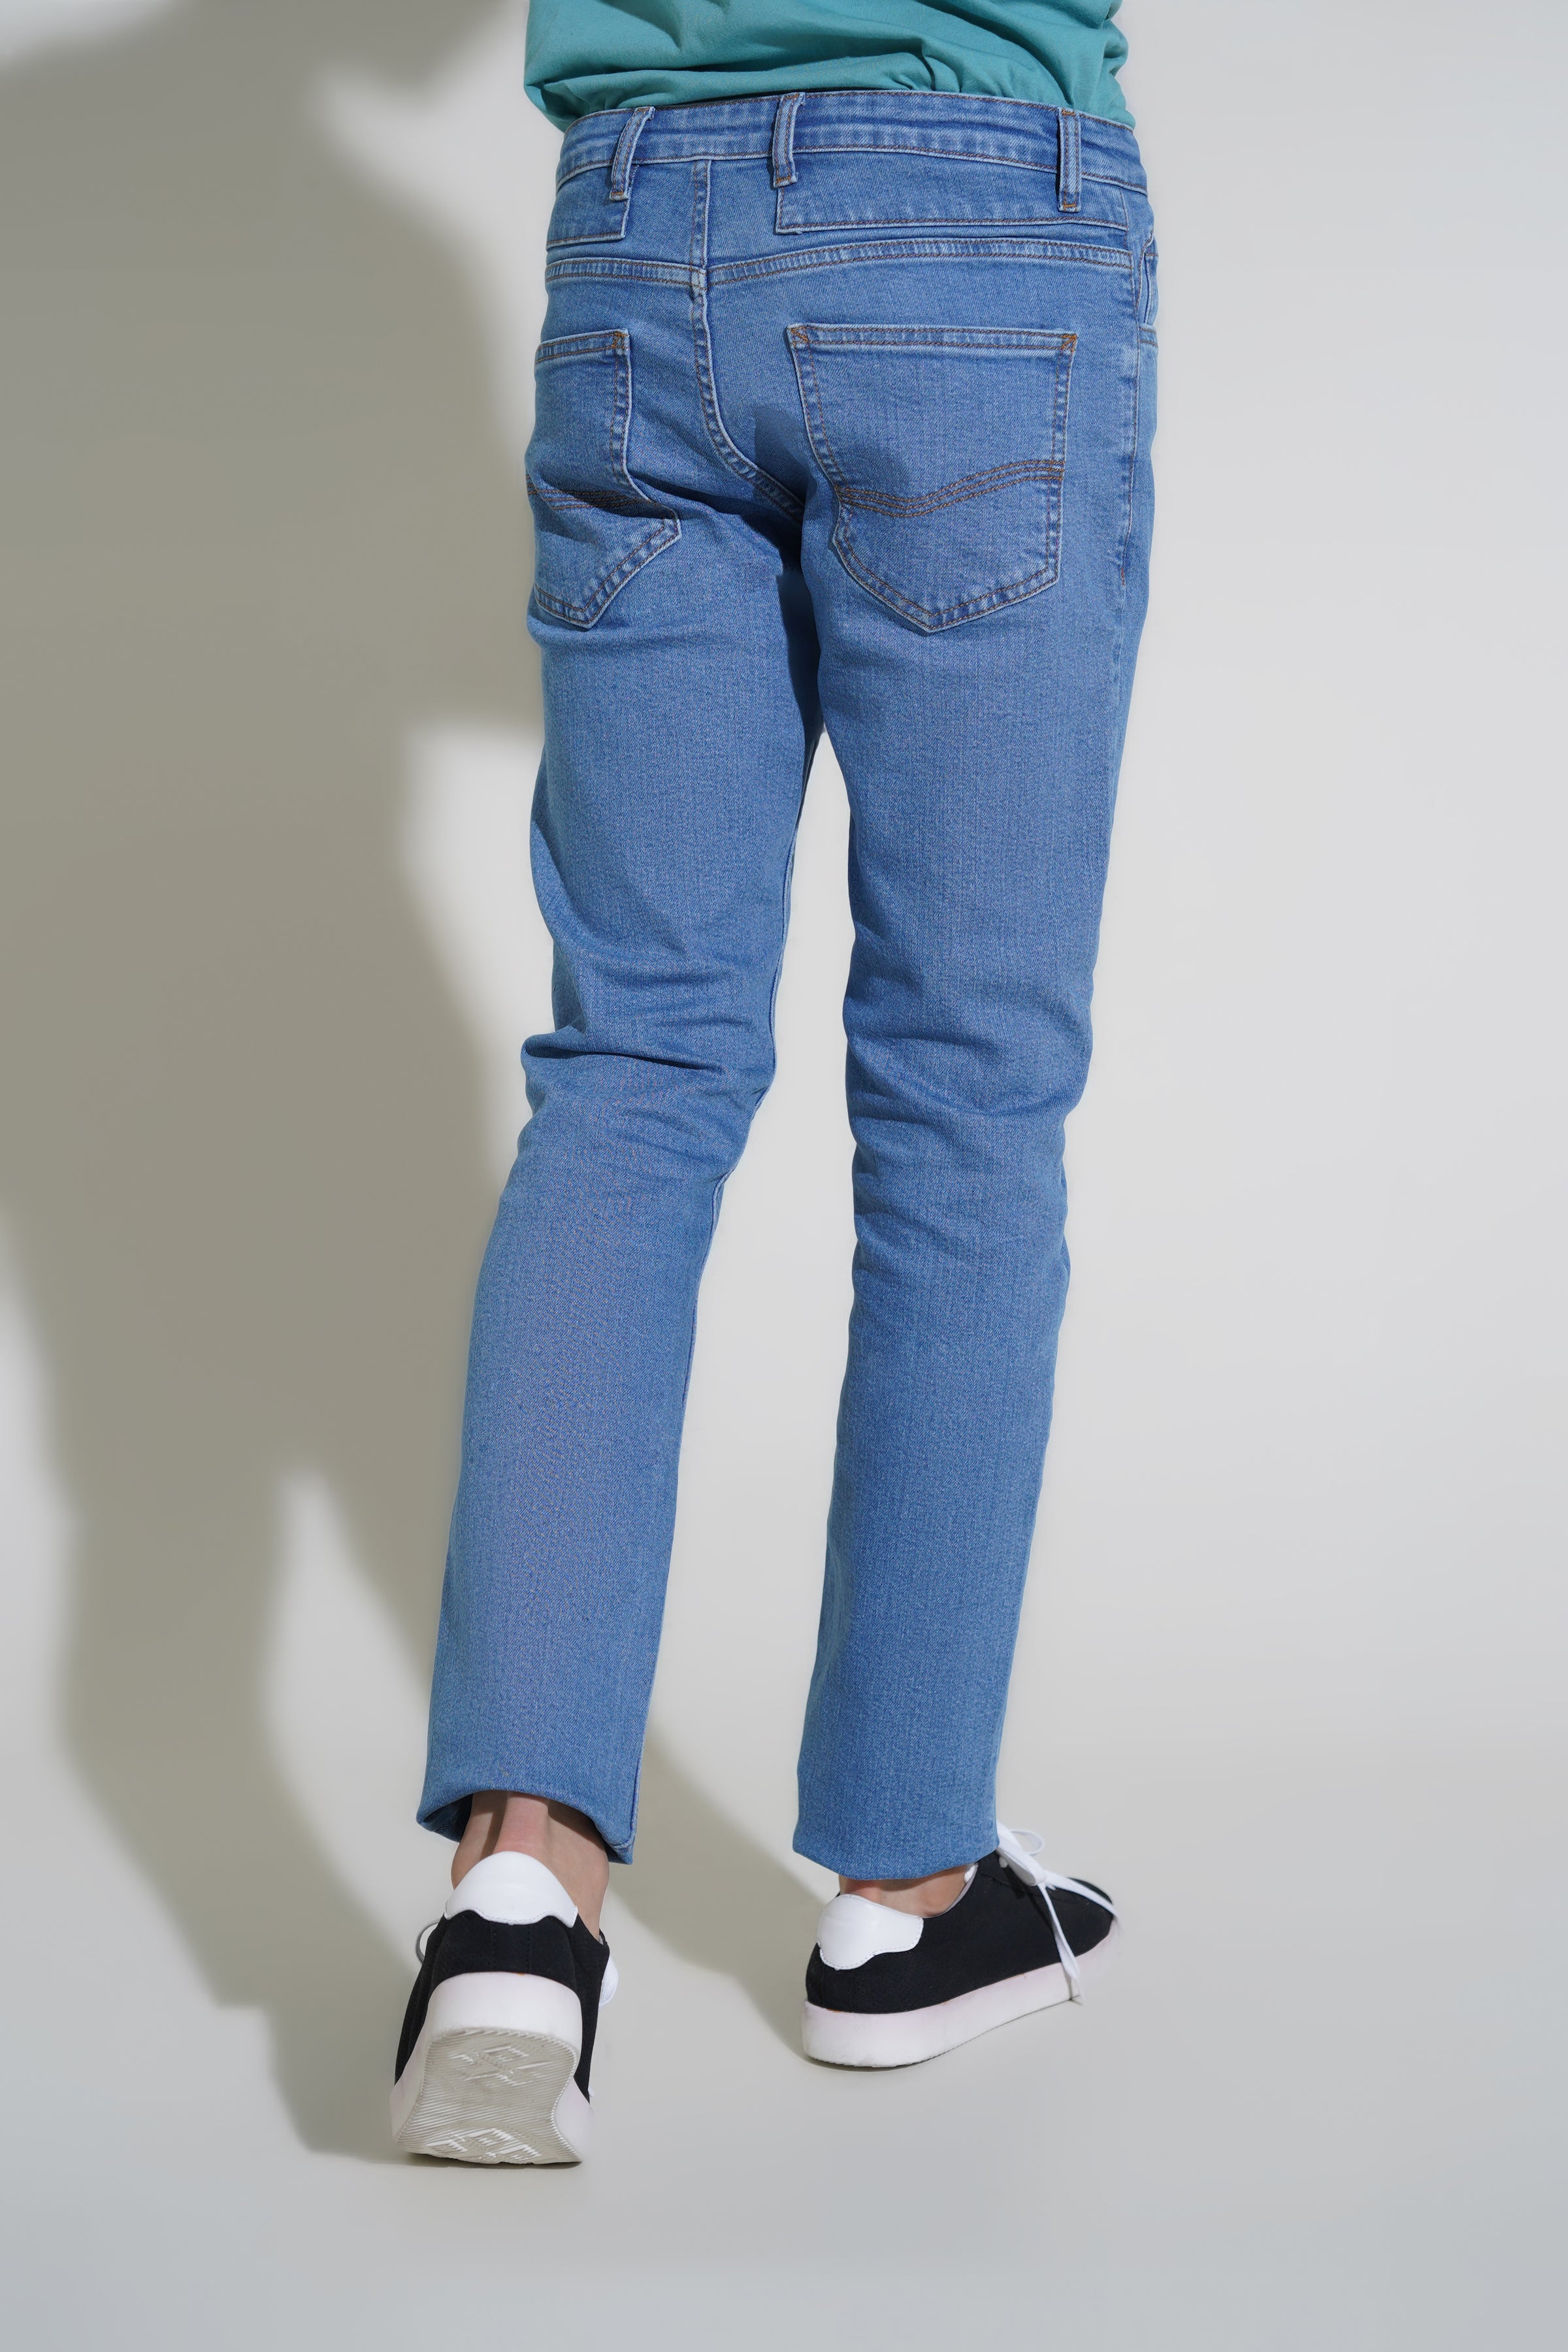 Gents Light Blue Smart Fit Jeans